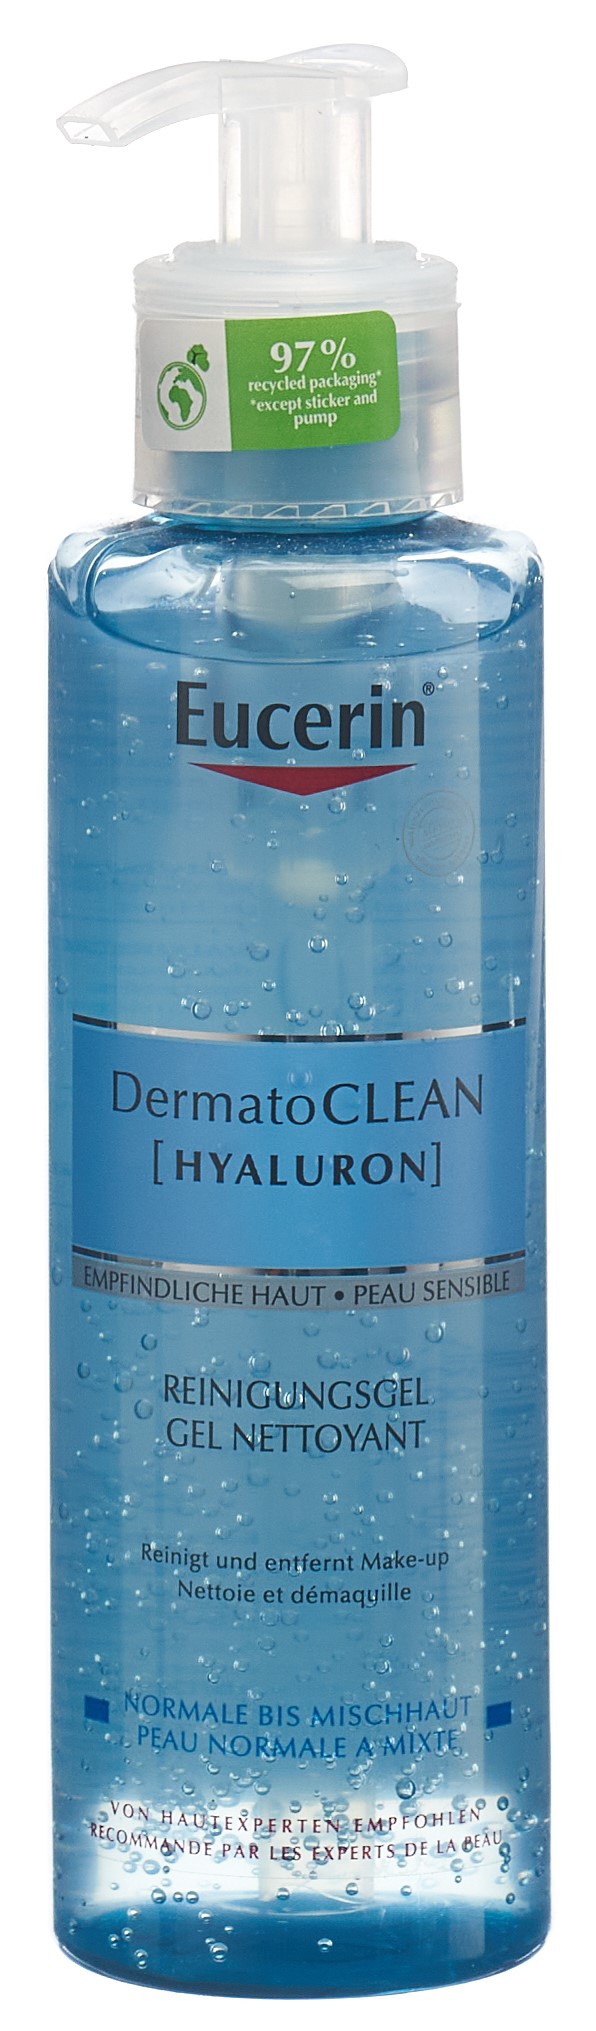 EUCERIN DermatoCLEAN Reinigungsgel erfrisch 200 ml